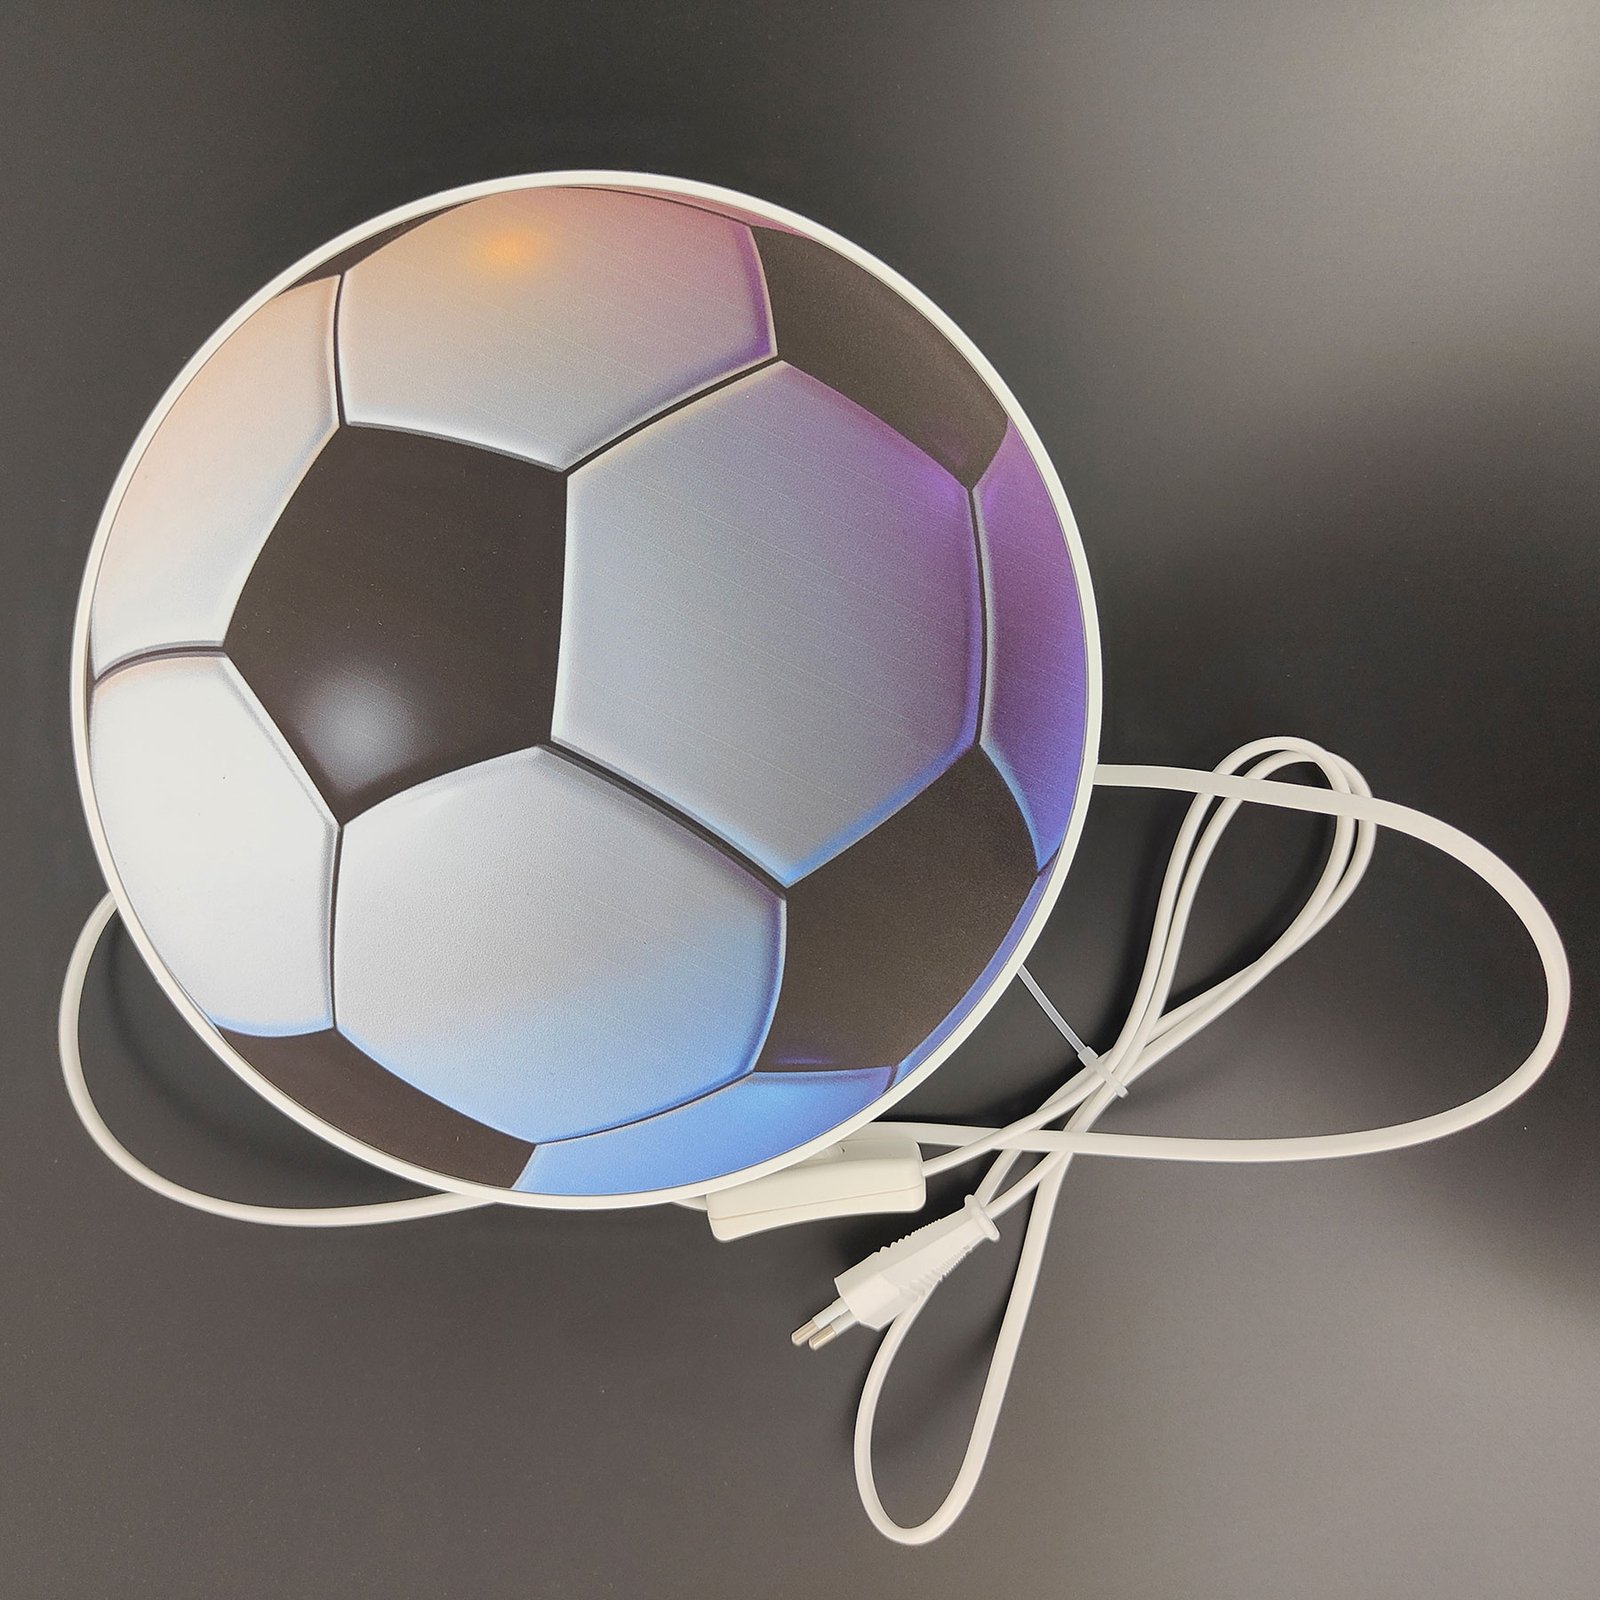 Vägglampa Fotboll med strömbrytare och kontakt